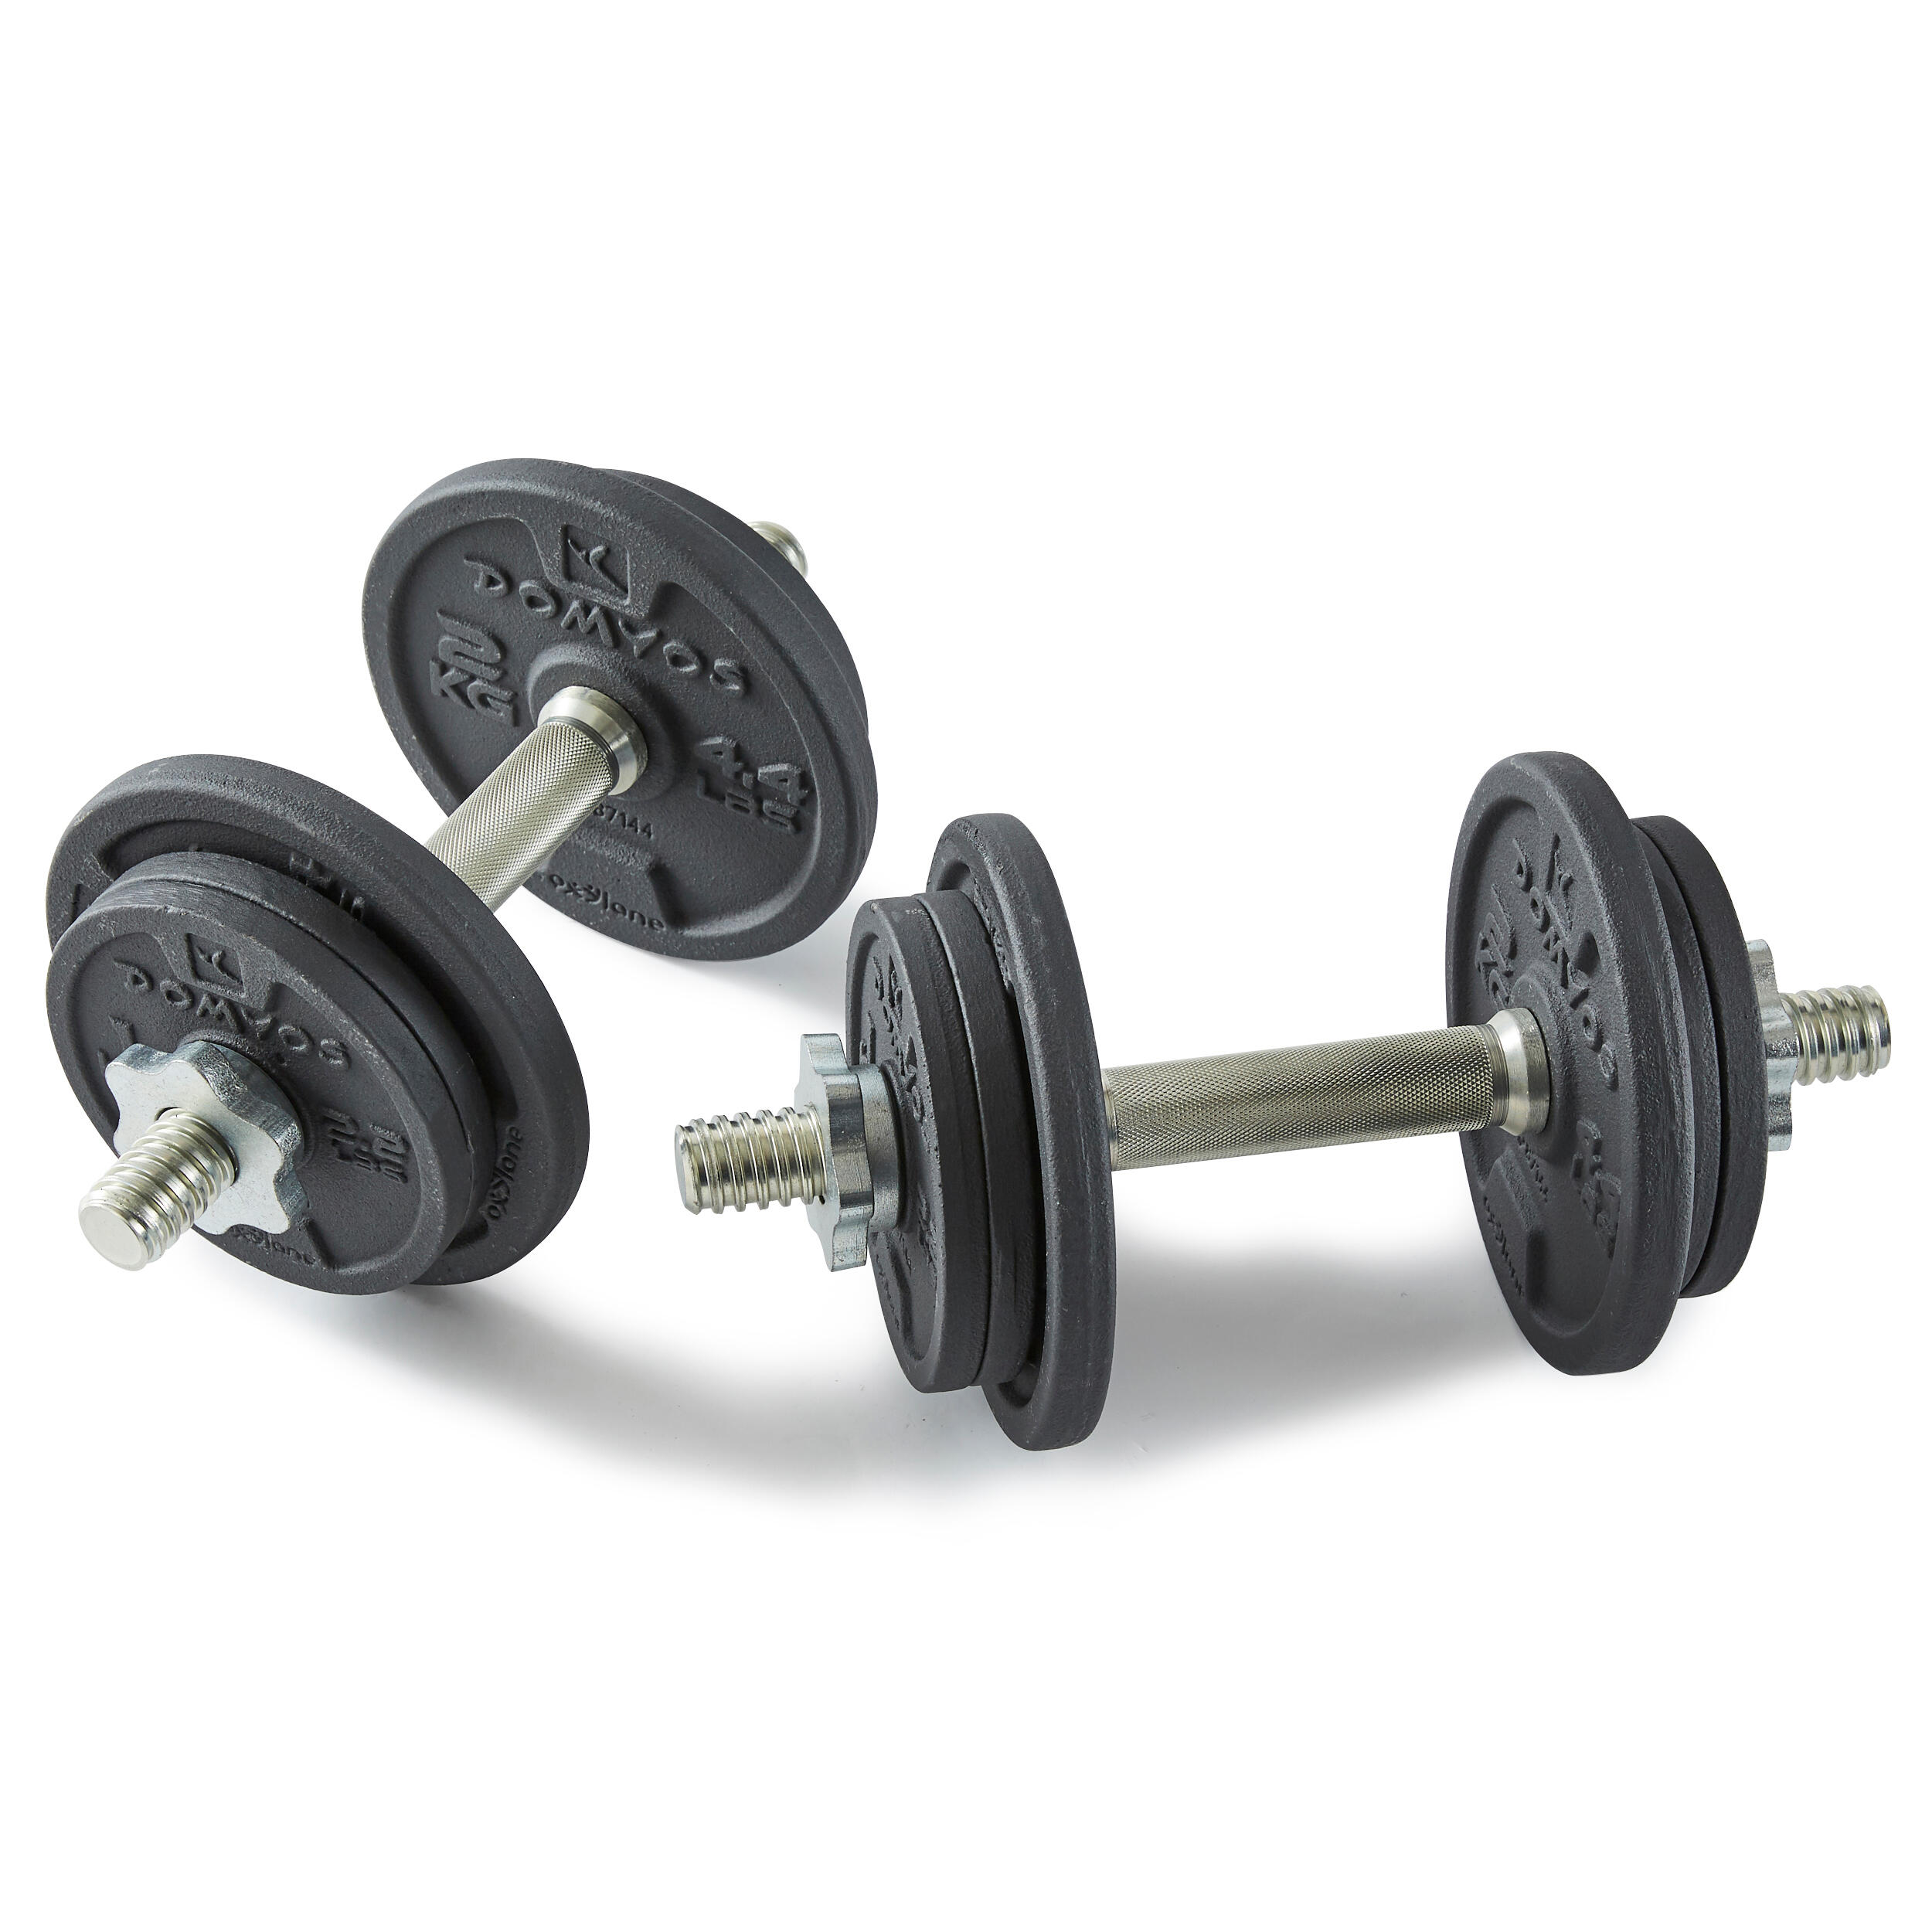 Haltères de musculation 44 lb (20 kg) - CORENGTH